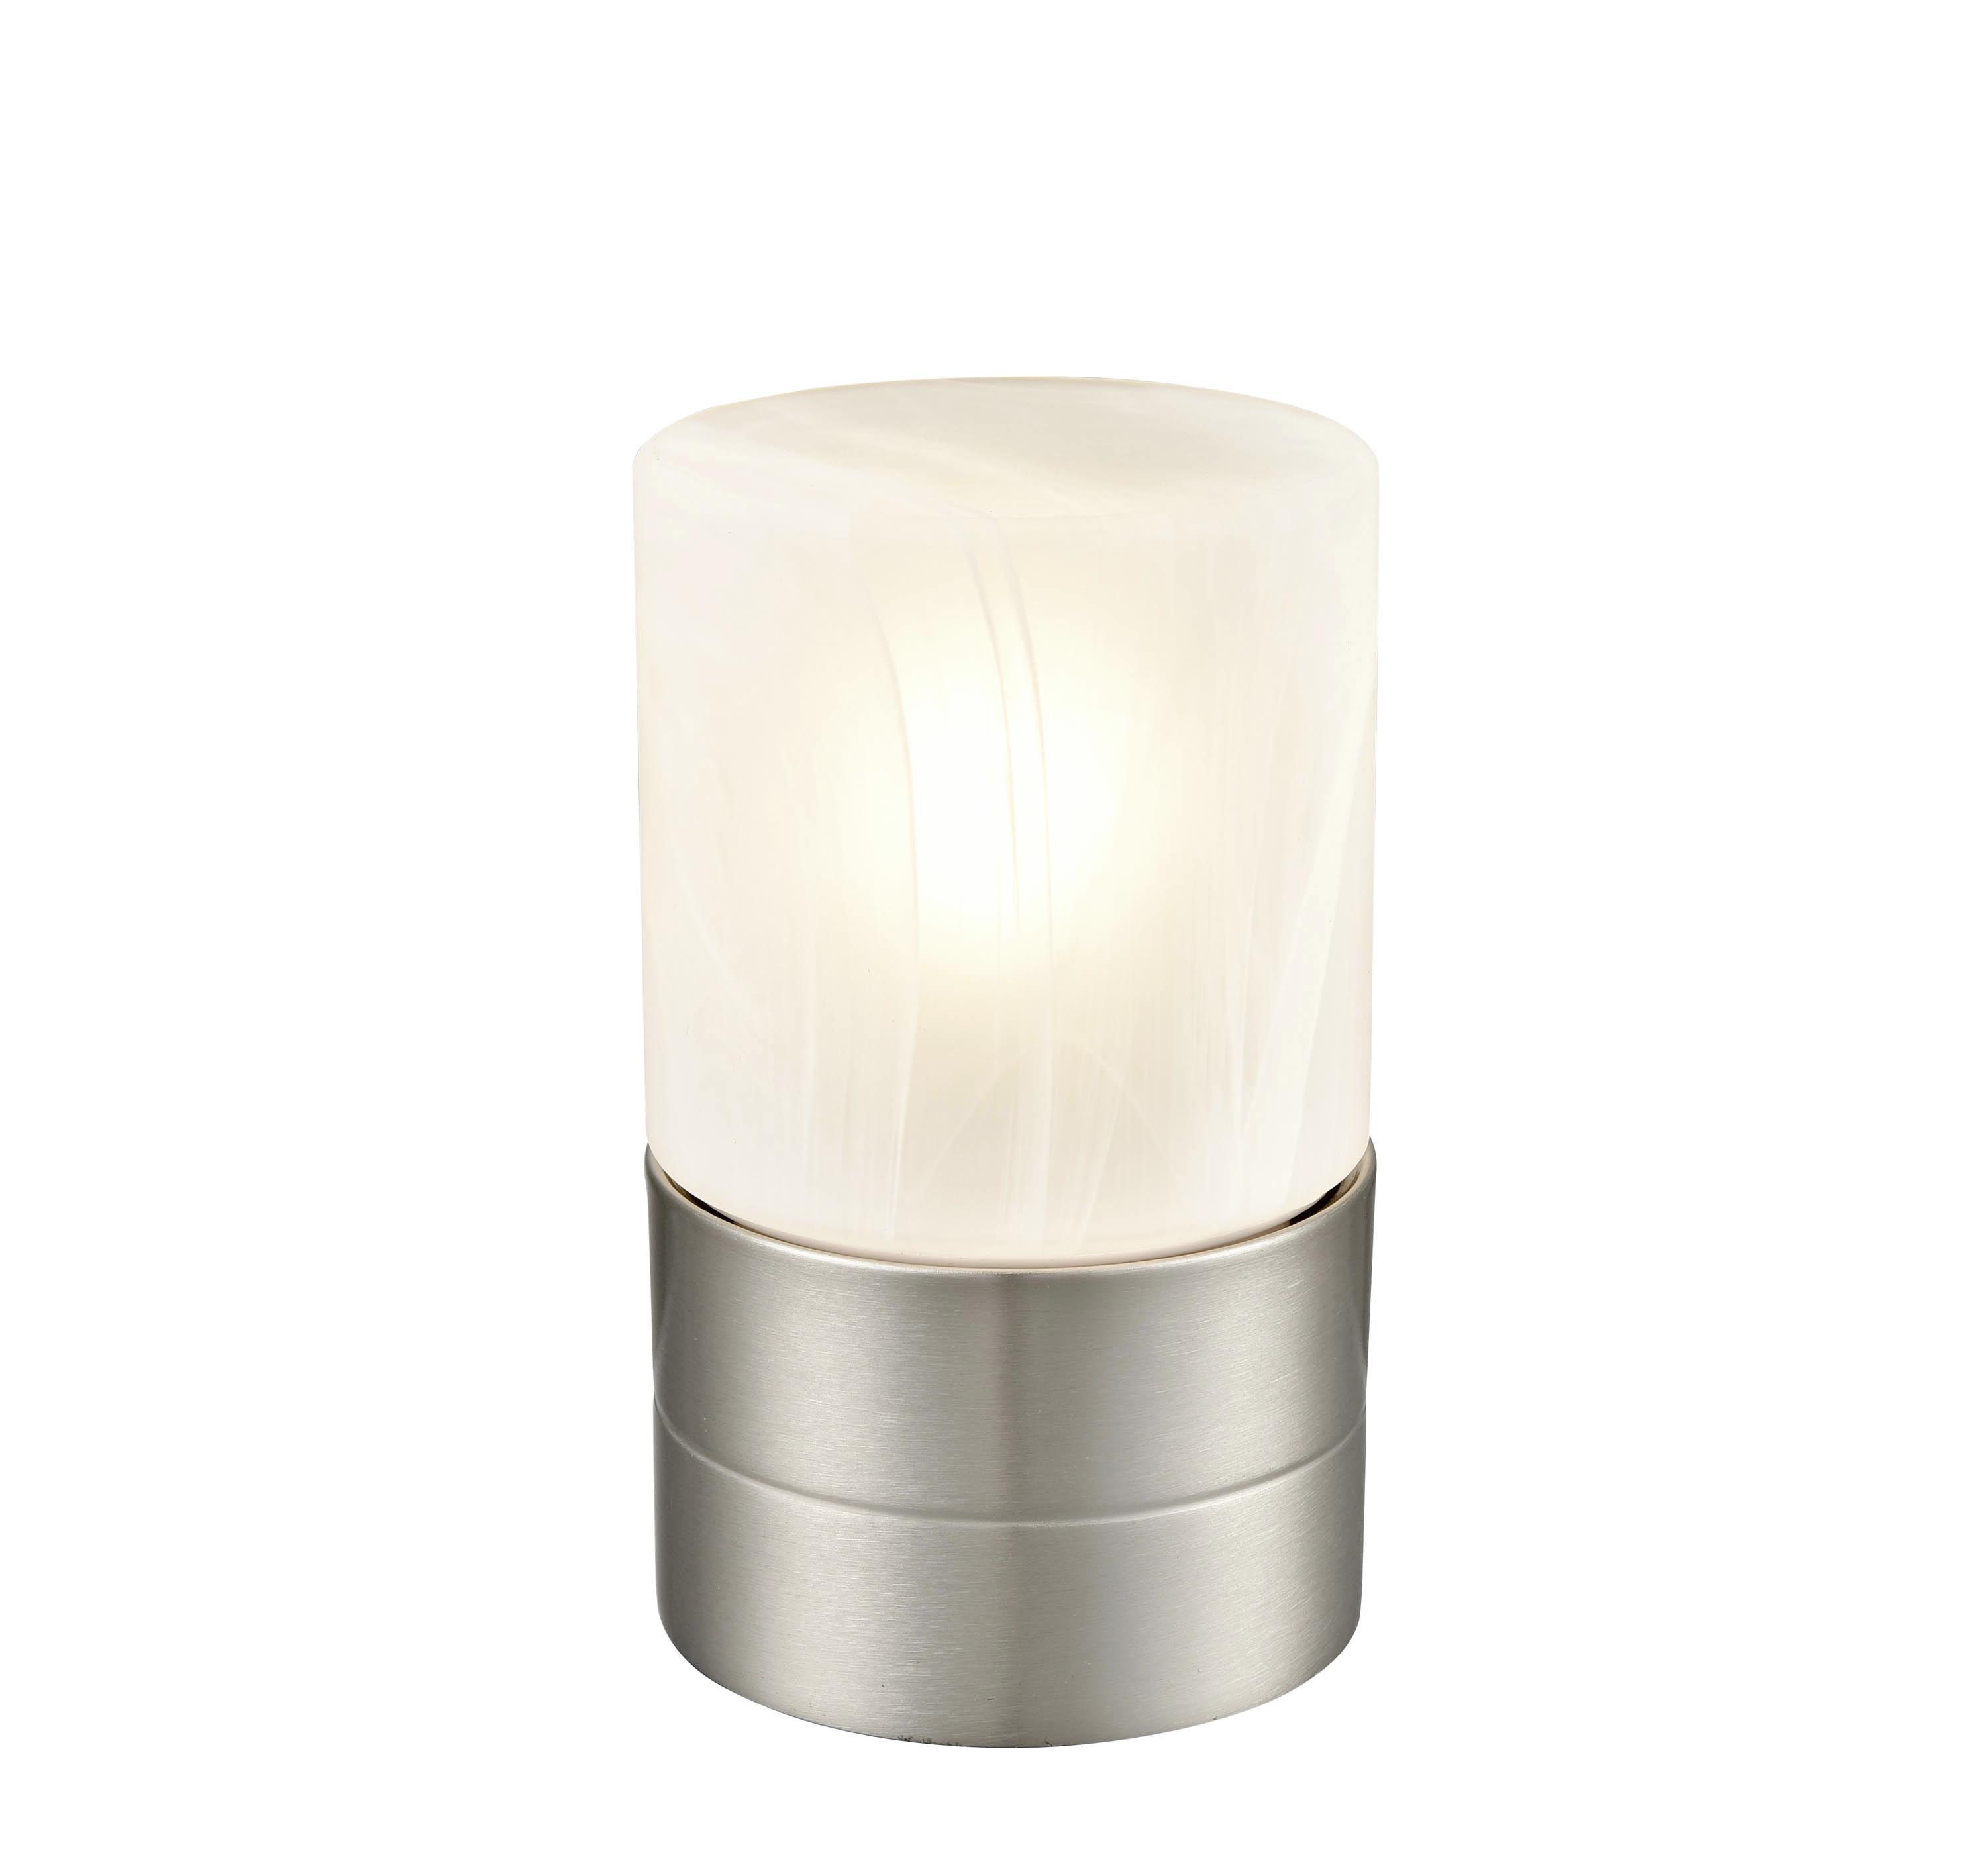 Tischlampe Eva Nickelfarben/ Weiß mit Touch-Funktion - Weiß/Nickelfarben, ROMANTIK / LANDHAUS, Glas/Metall (9/15cm) - James Wood